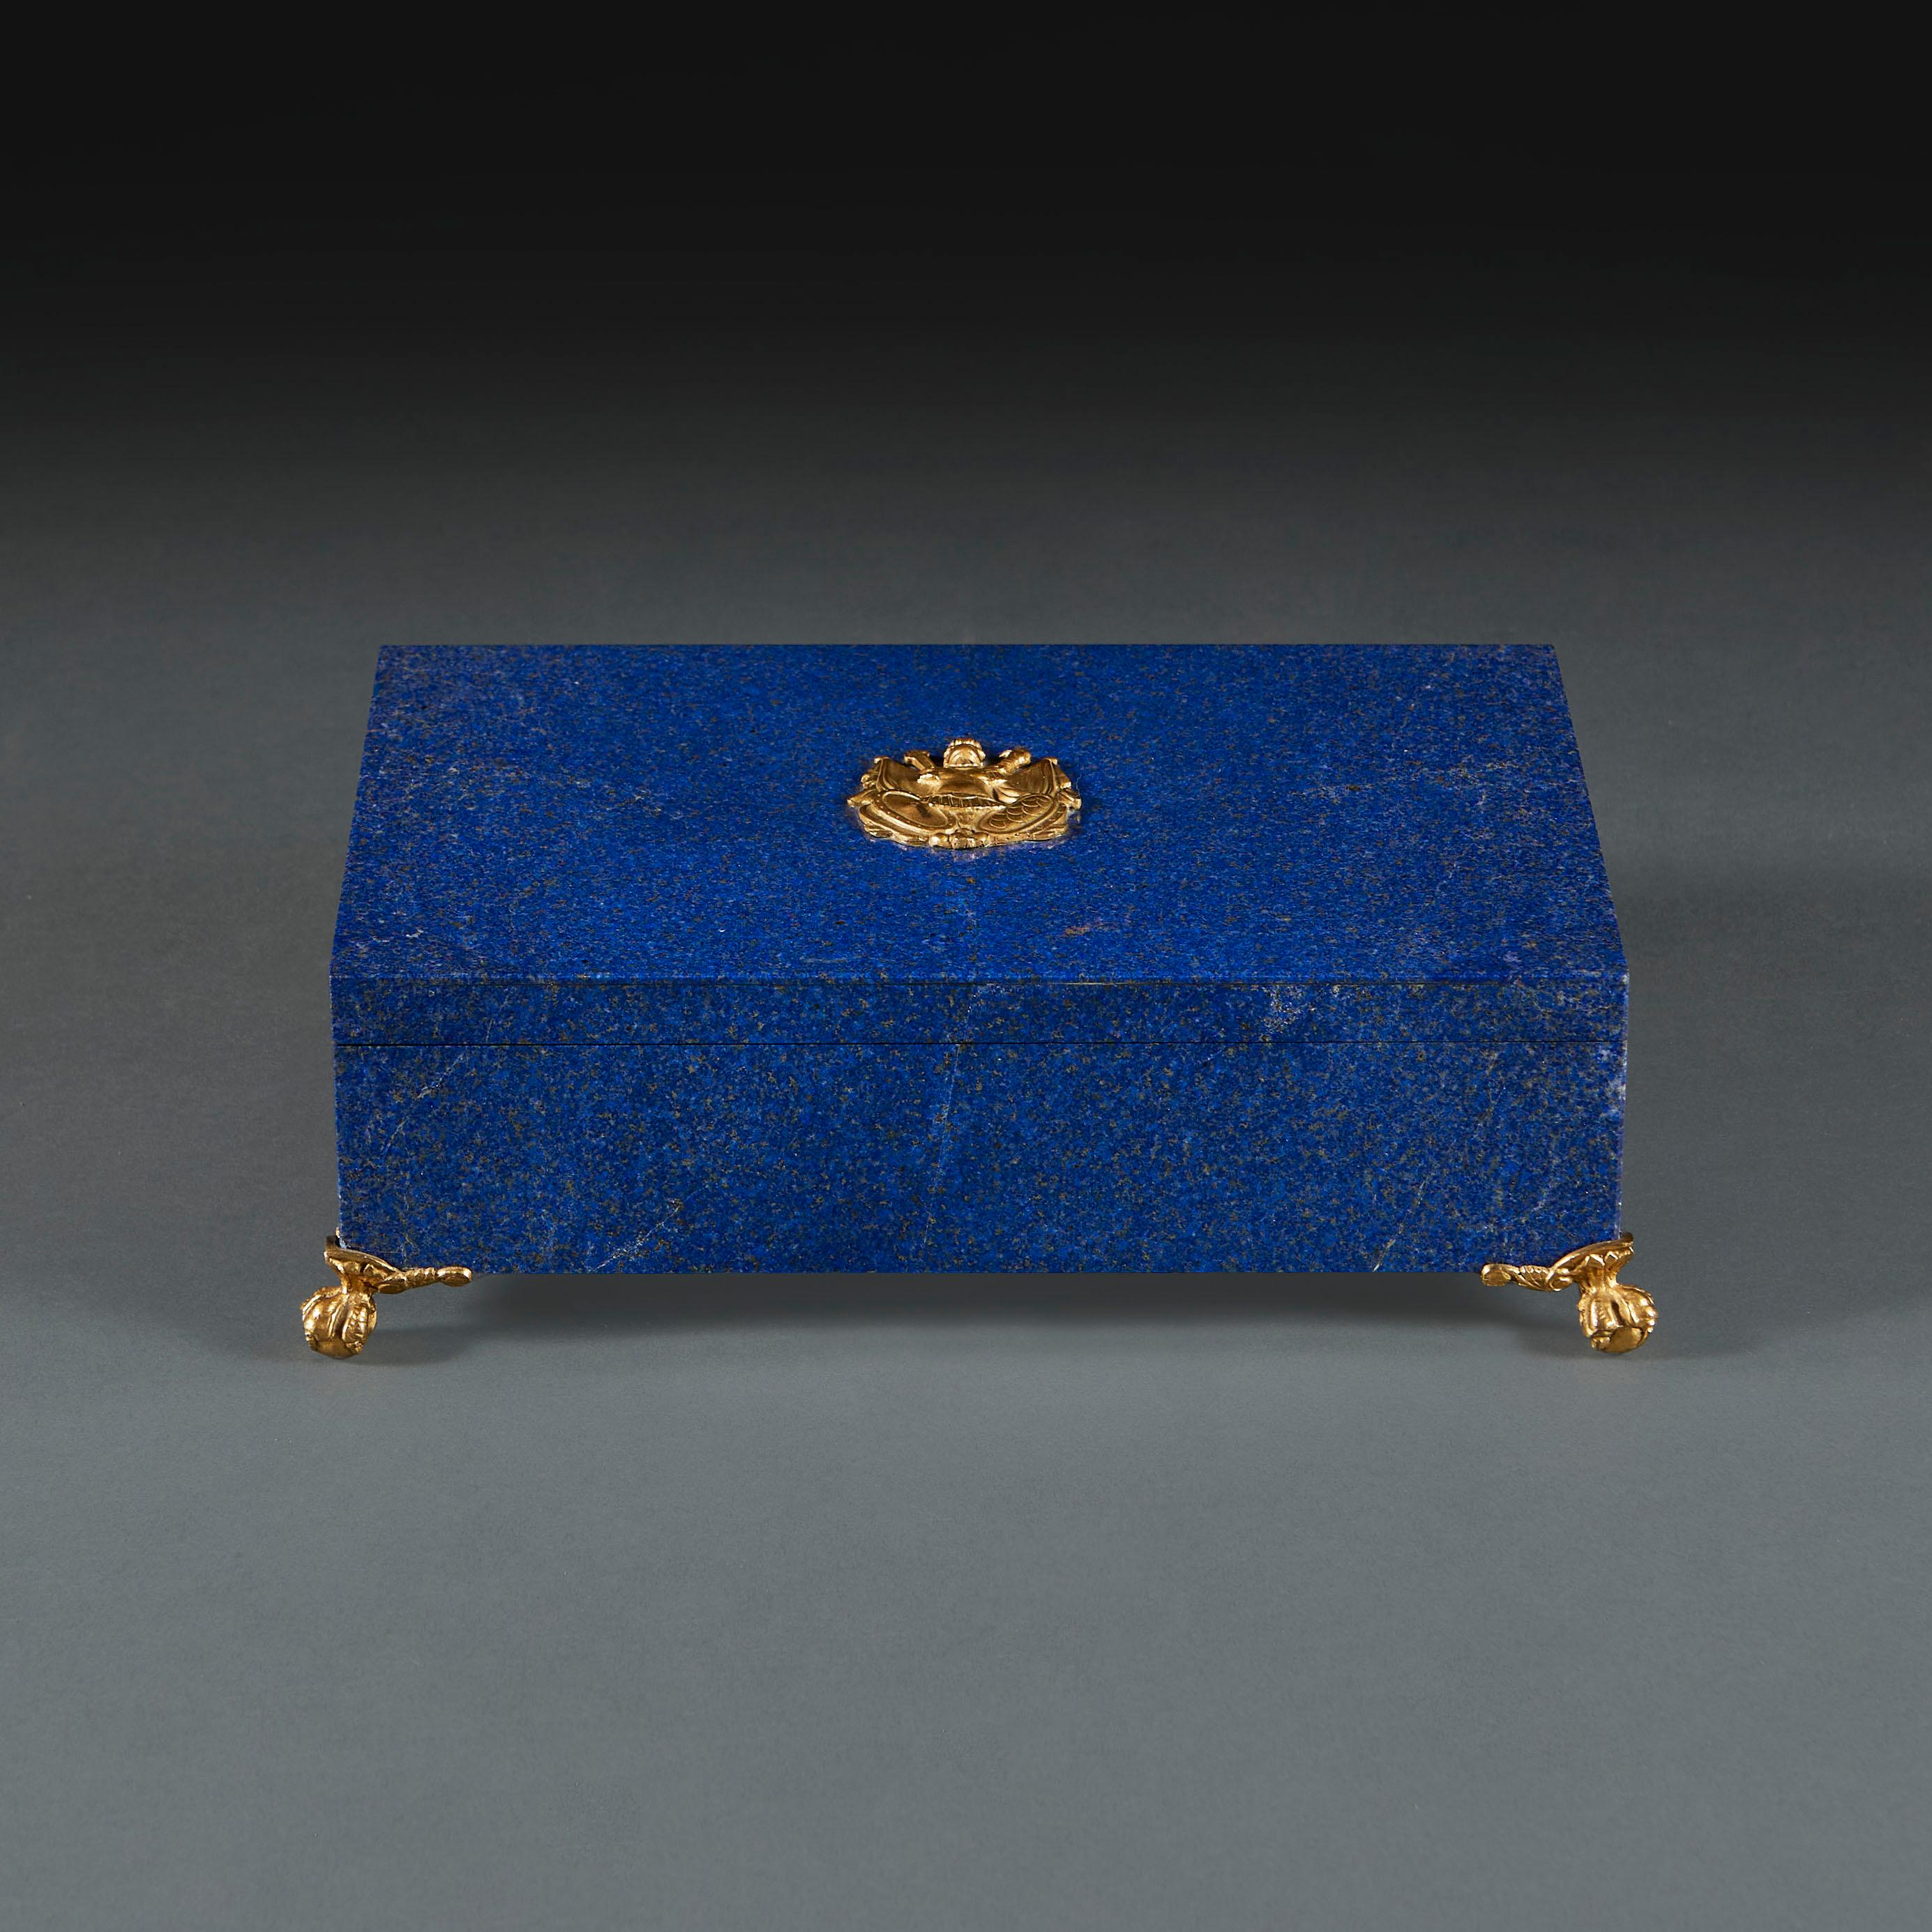 France, vers 1930

Magnifique coffret Art déco du début du XXe siècle en lapis-lazuli, dont l'intérieur est tapissé d'ardoise noire, avec un trophée de Marshall sur le dessus et des montures en bronze doré, le tout reposant sur des pieds en forme de